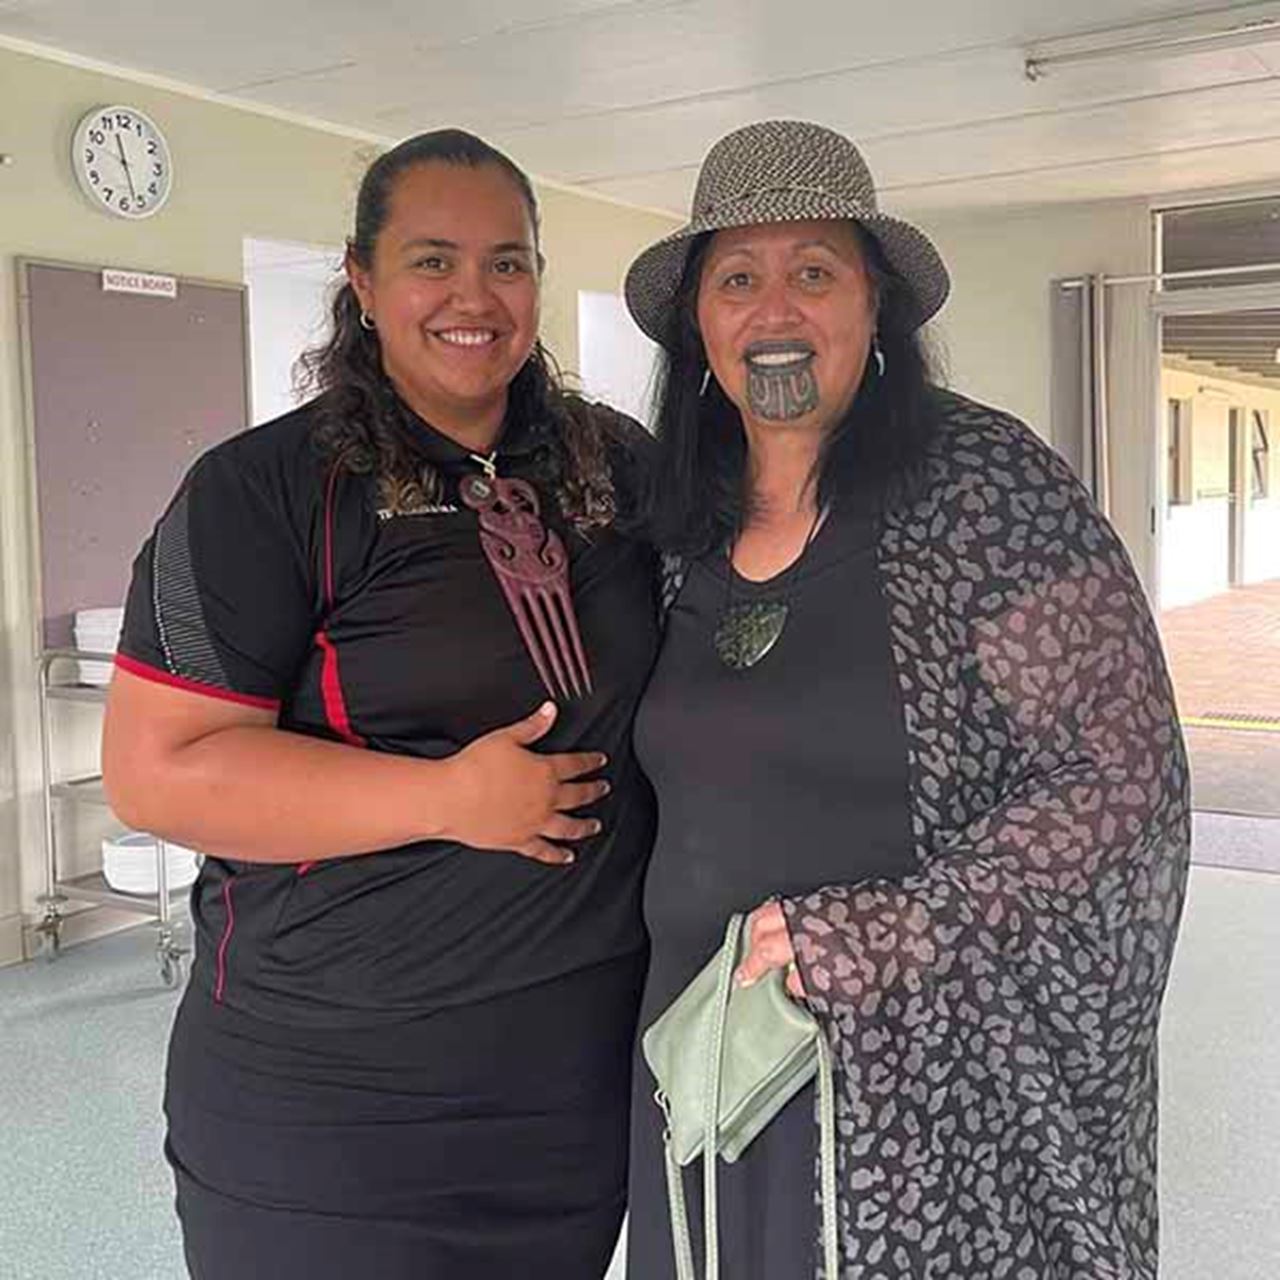 From left: Makaea Tihi, Whaea Waitangi Black